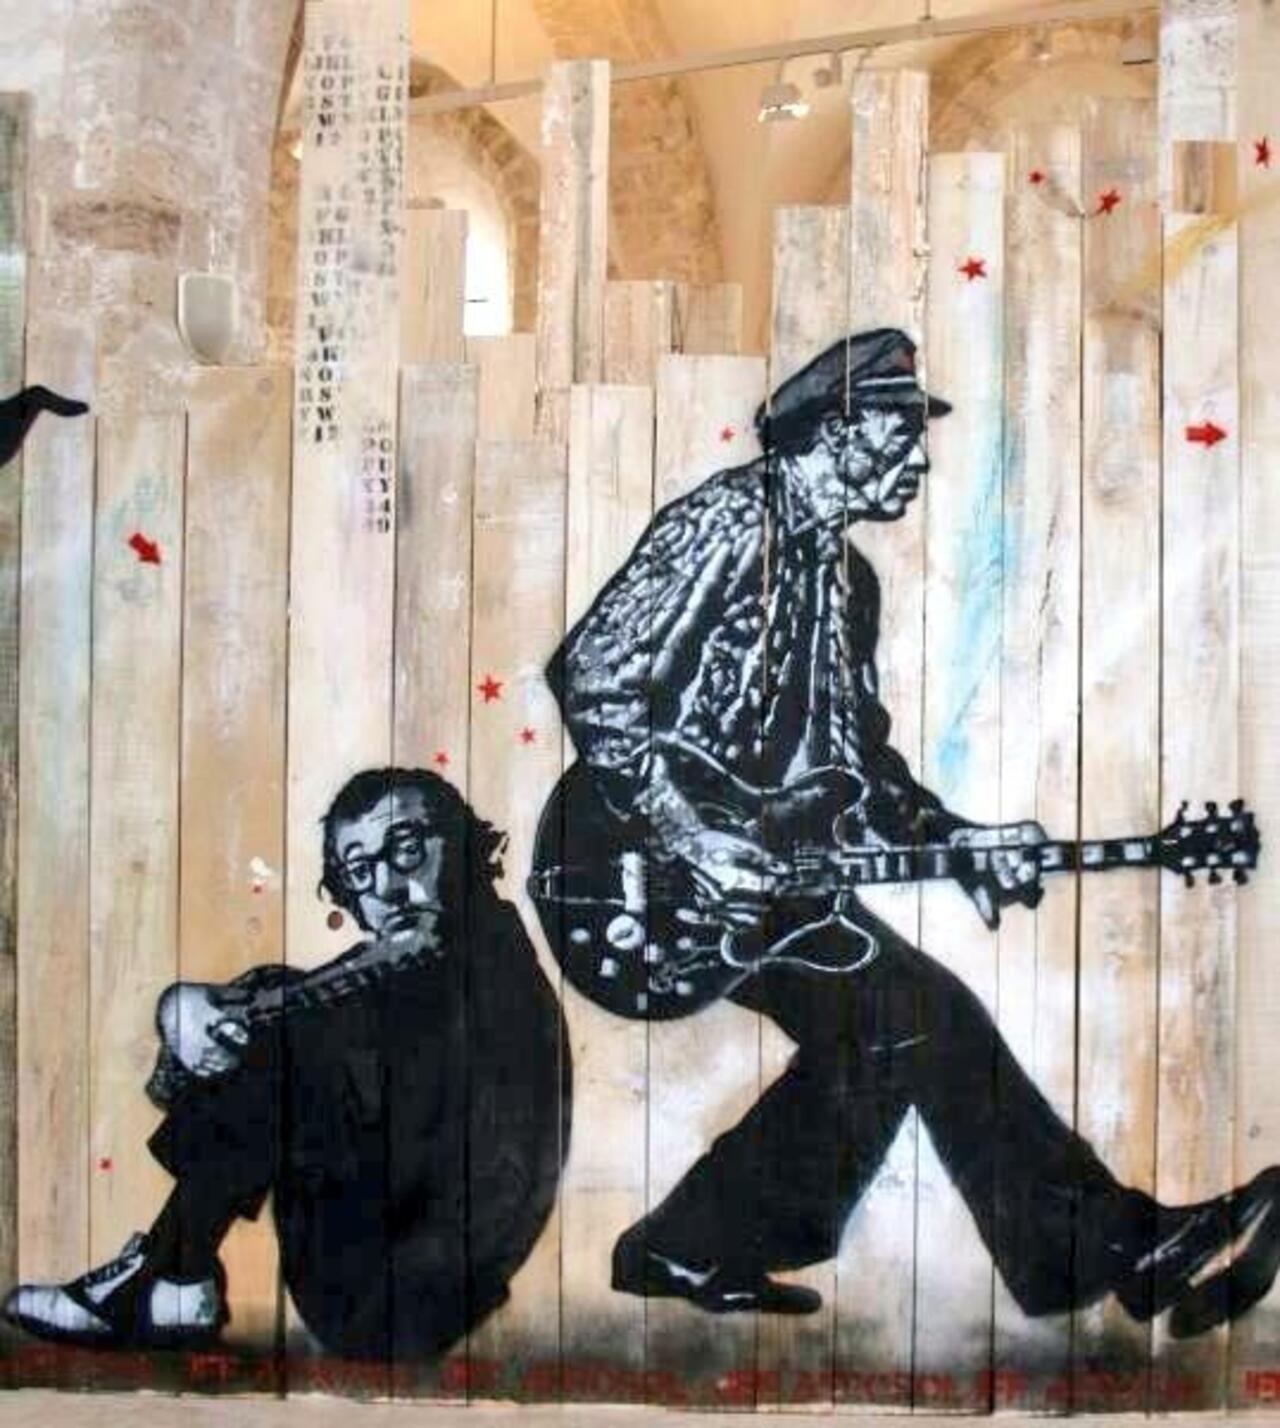 Jef Aerosol does Woody Allen & Chuck Berry!

#streetart #art #urbanart #graffiti http://t.co/4L48ejz32Z